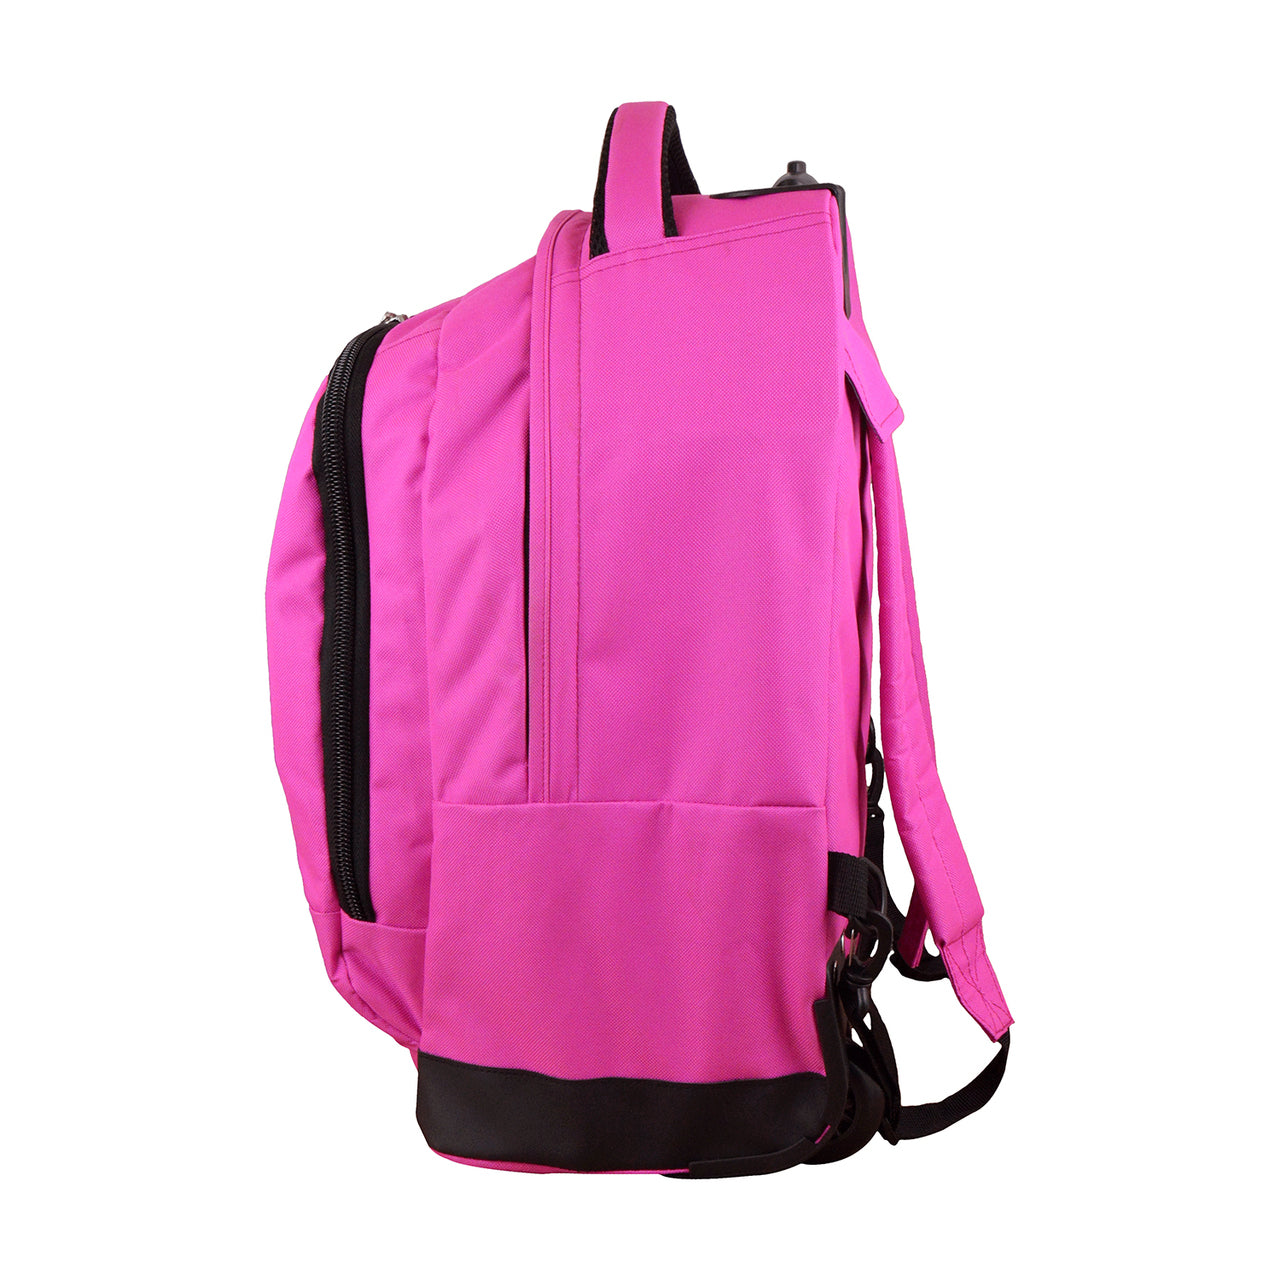 Arizona State Premium Wheeled Backpack in Pink